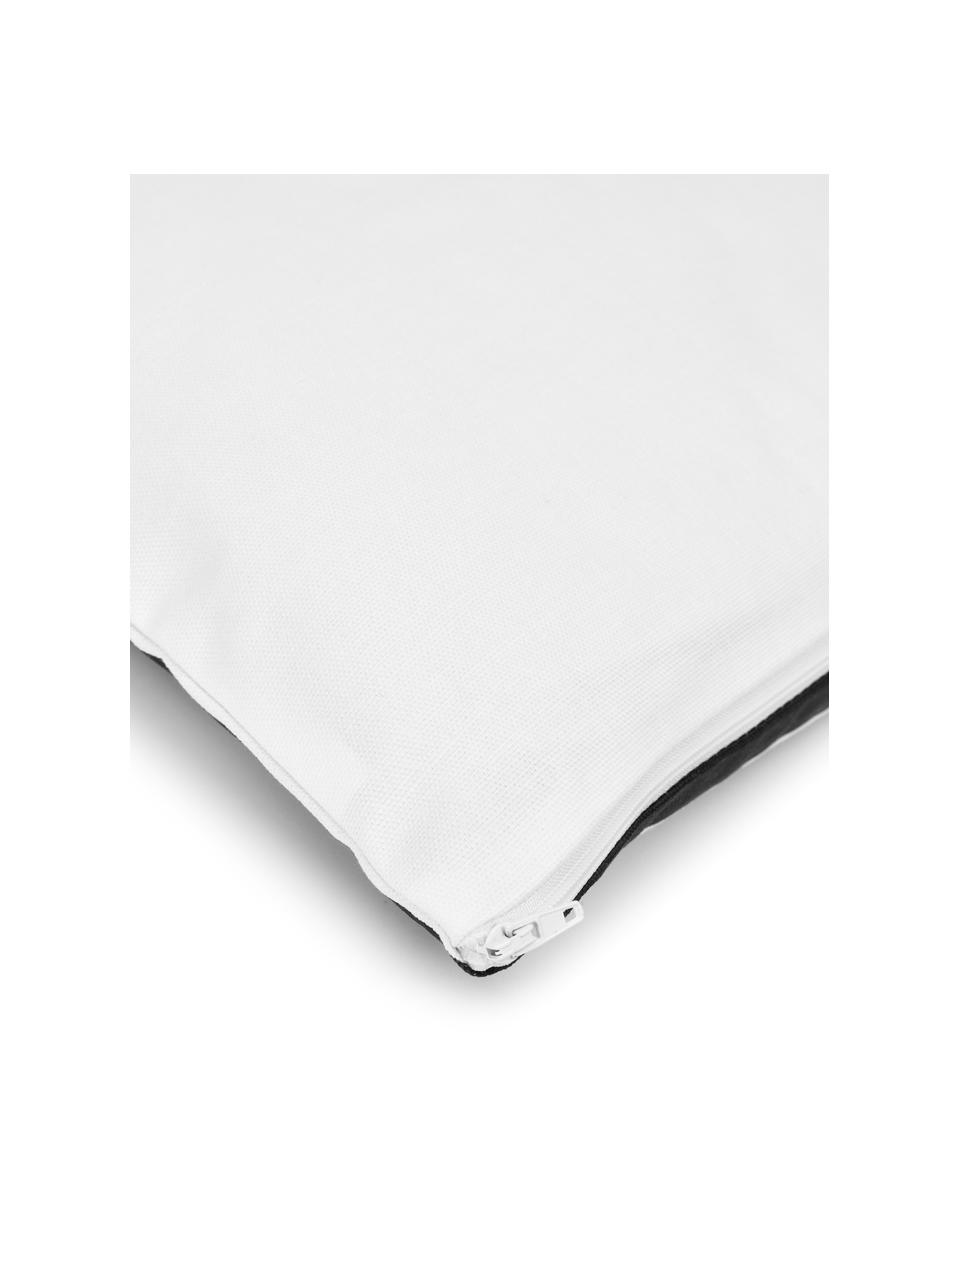 Federa arredo in cotone nero/bianco con motivo grafico Zahra, 100% cotone, Bianco, nero, Larg. 45 x Lung. 45 cm